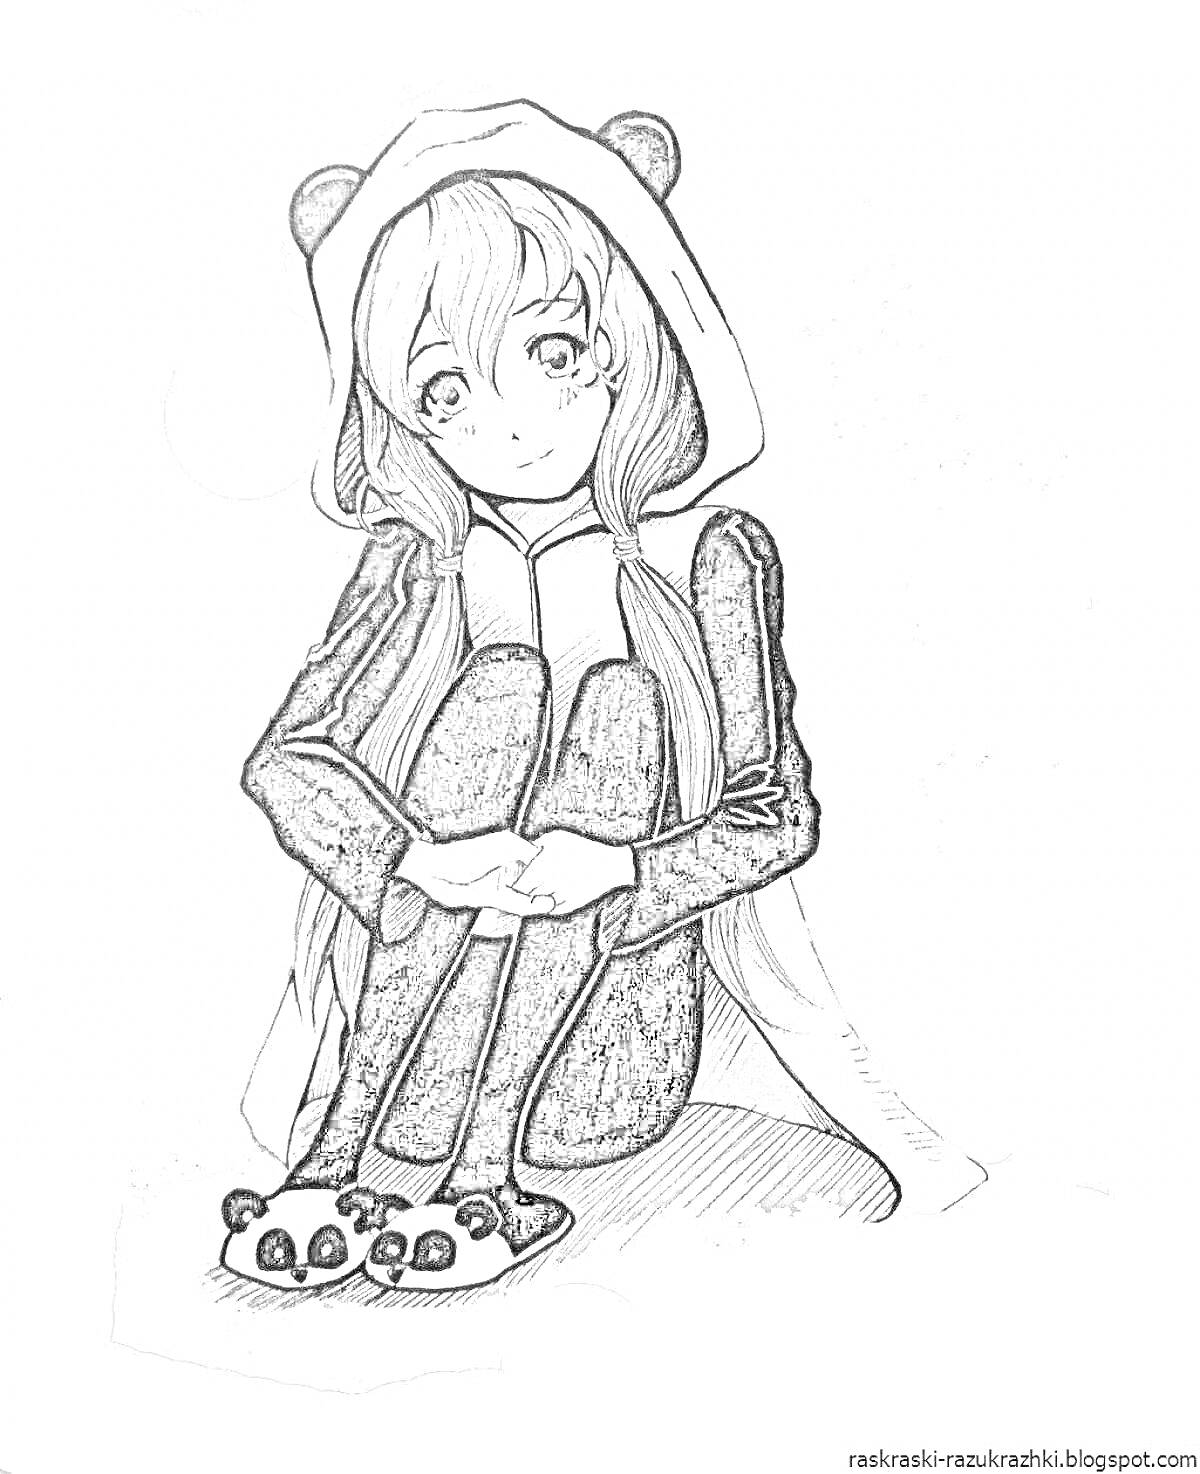 Раскраска Девочка в кигуруми панды, сидящая с согнутыми коленями